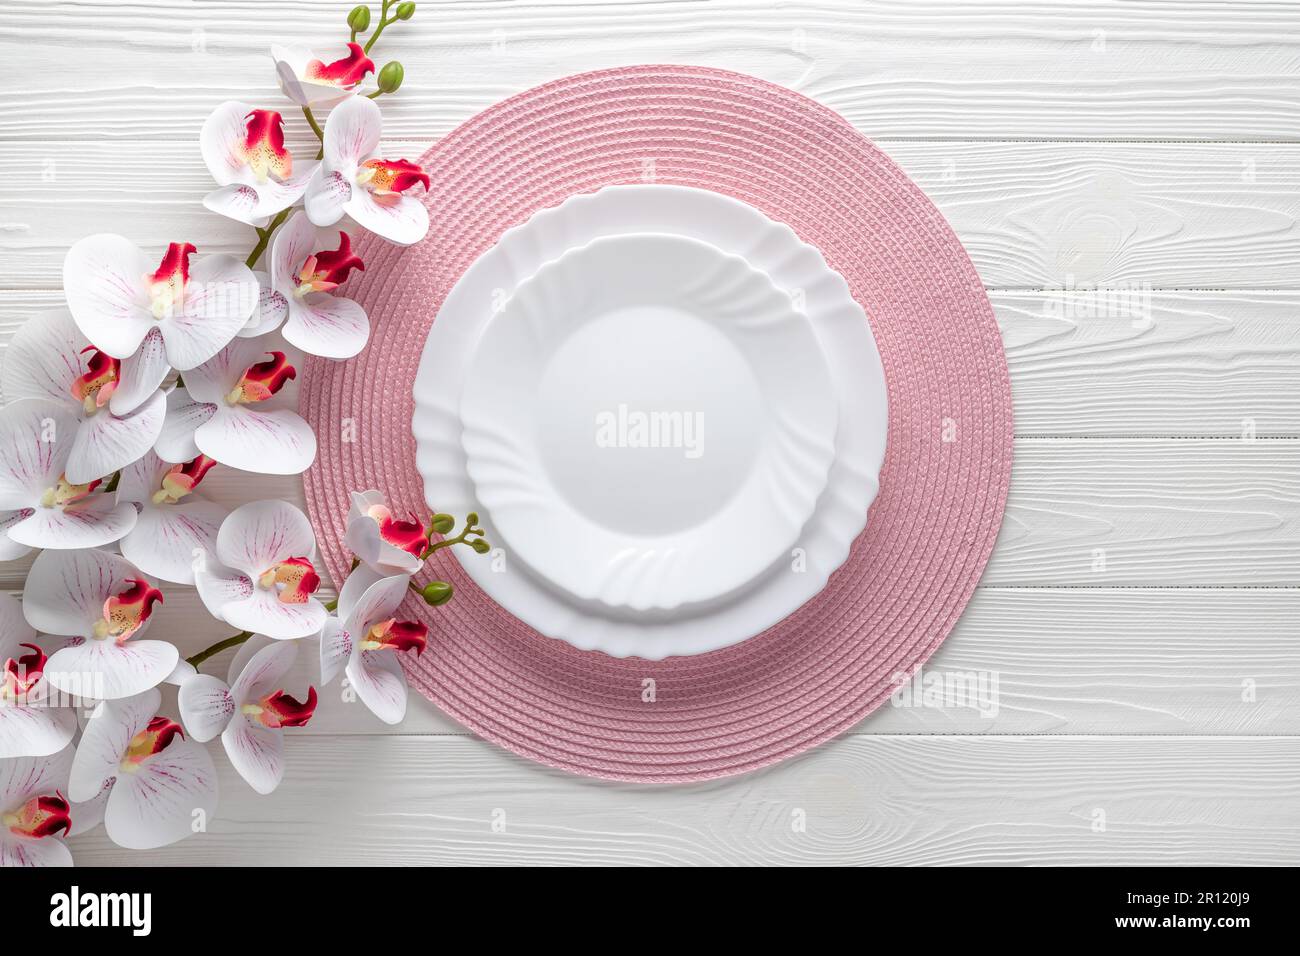 Festliches Ambiente mit pinkfarbenen Servietten und Orchideenblumen. Leere Teller auf weißem Holztisch. Draufsicht. Festliches Abendessen. Karte oder Menüvorlage, flach d Stockfoto